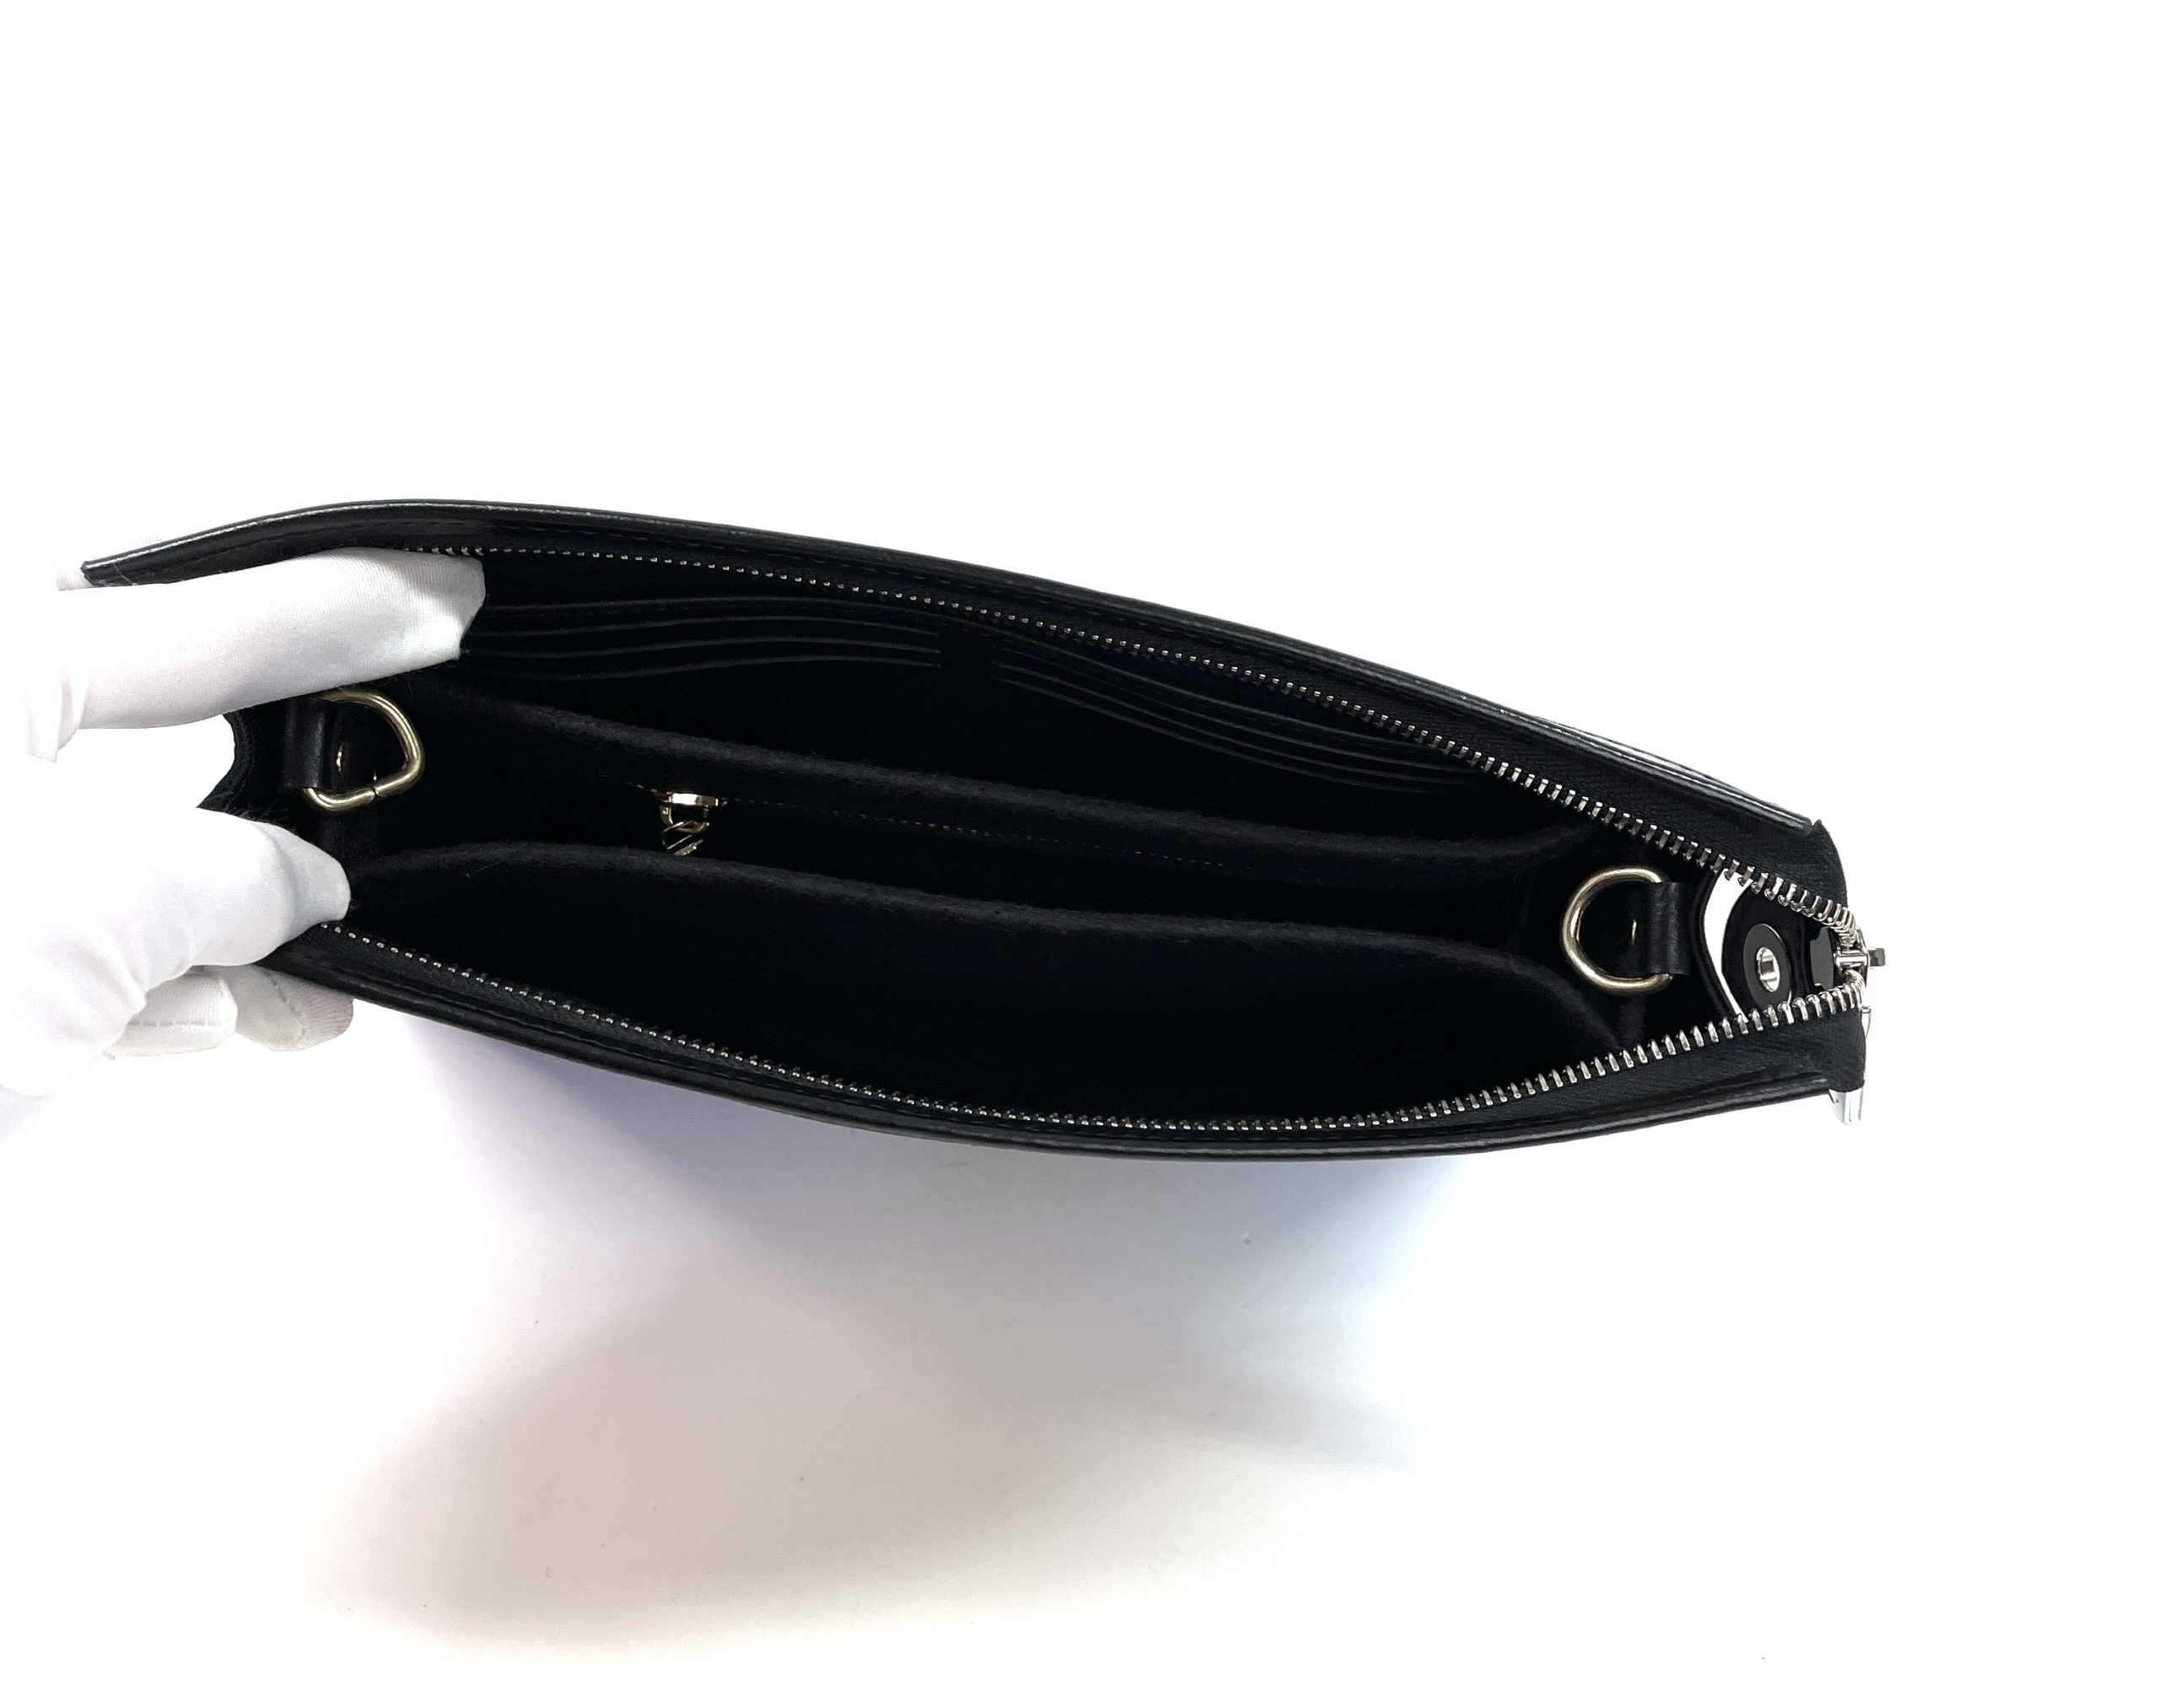 Pochette voyage leather clutch bag Louis Vuitton Multicolour in